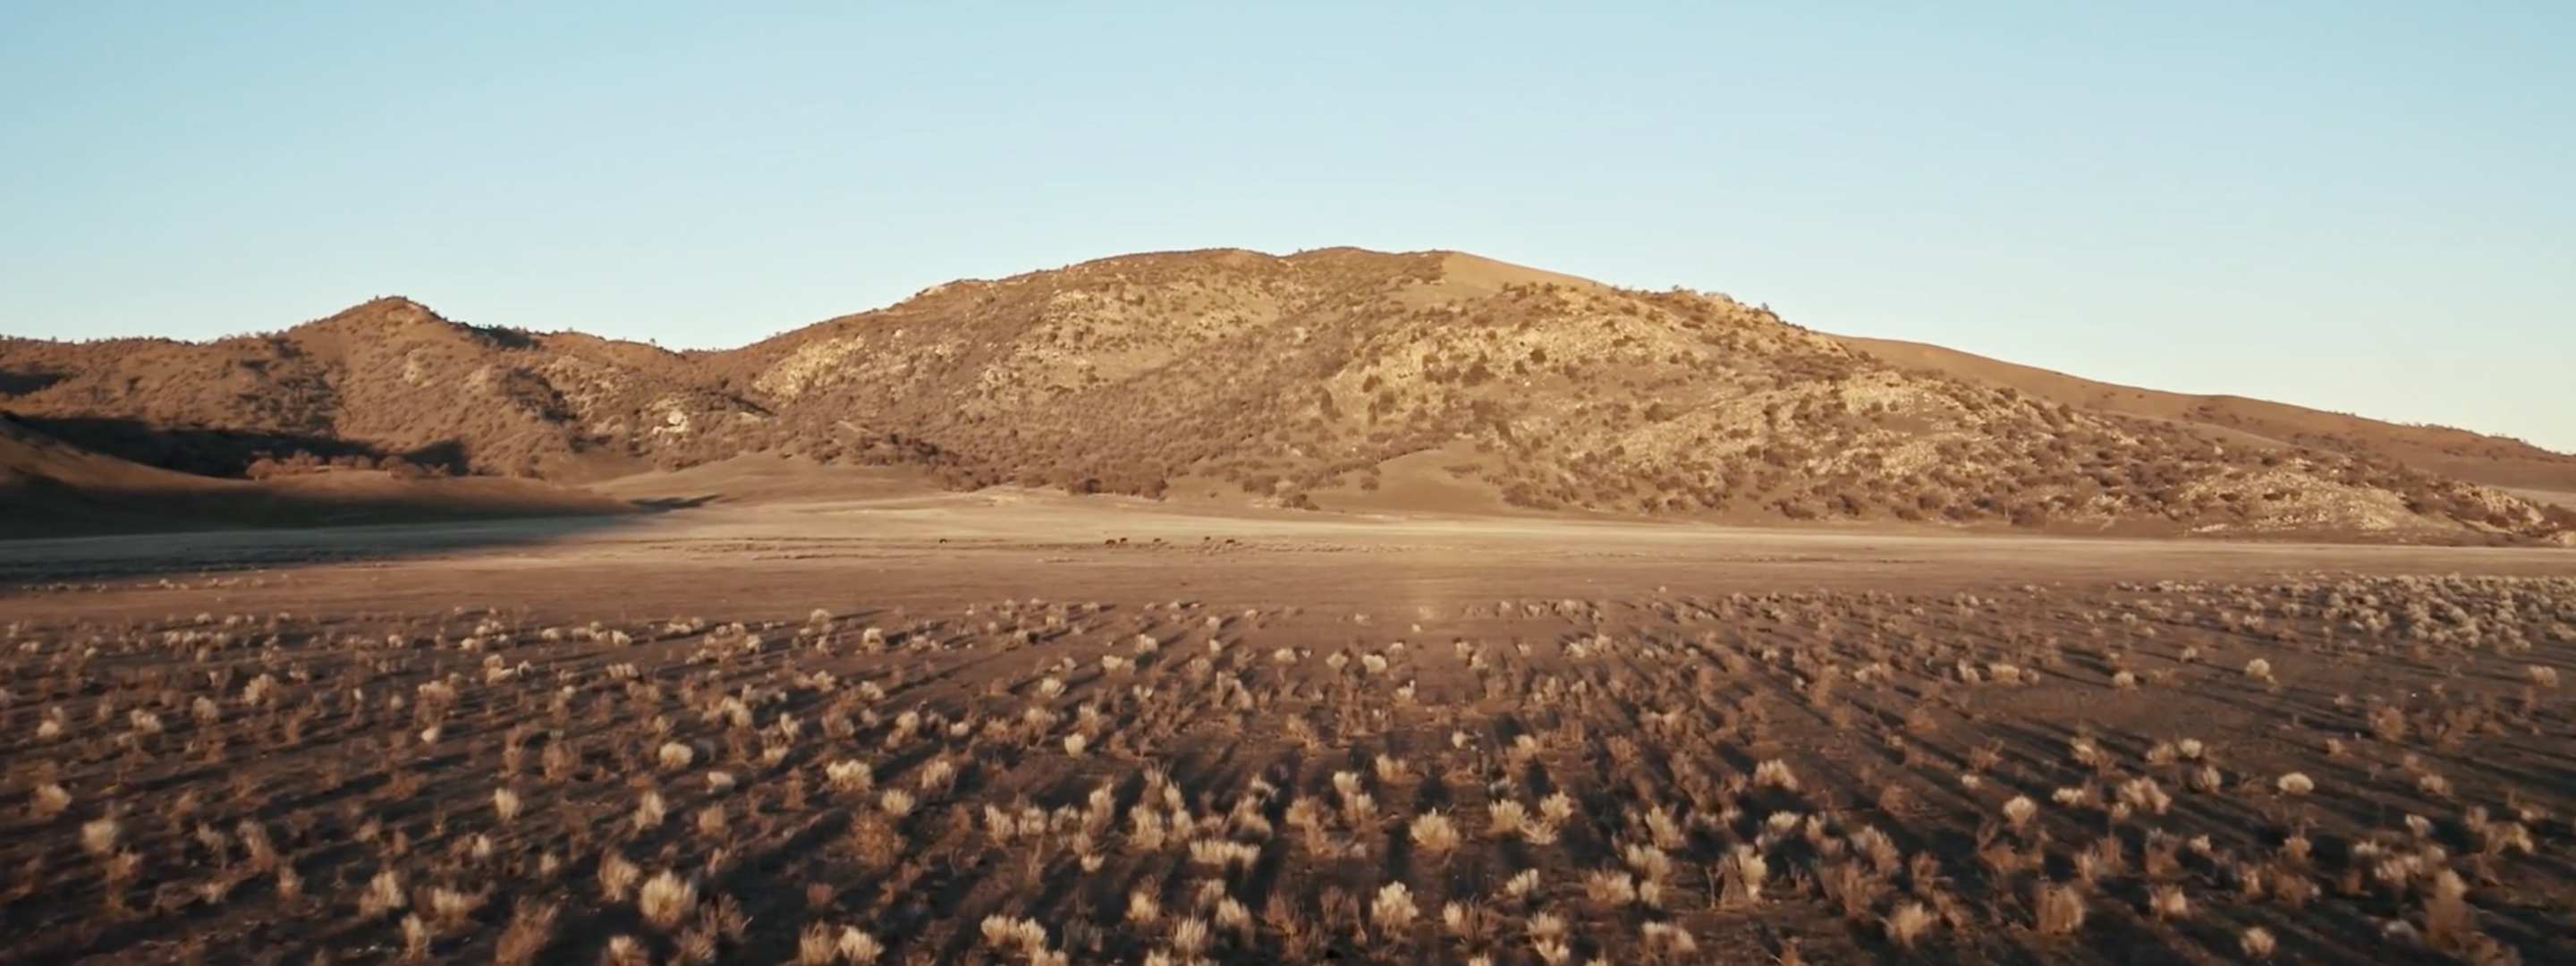 <a href="https://www.capgemini.com/news/inside-stories/mojave-desert/"></a>El desierto de Mojave<a href="https://www.capgemini.com/news/inside-stories/mojave-desert/">: datos de tortugas y neumáticos</a>